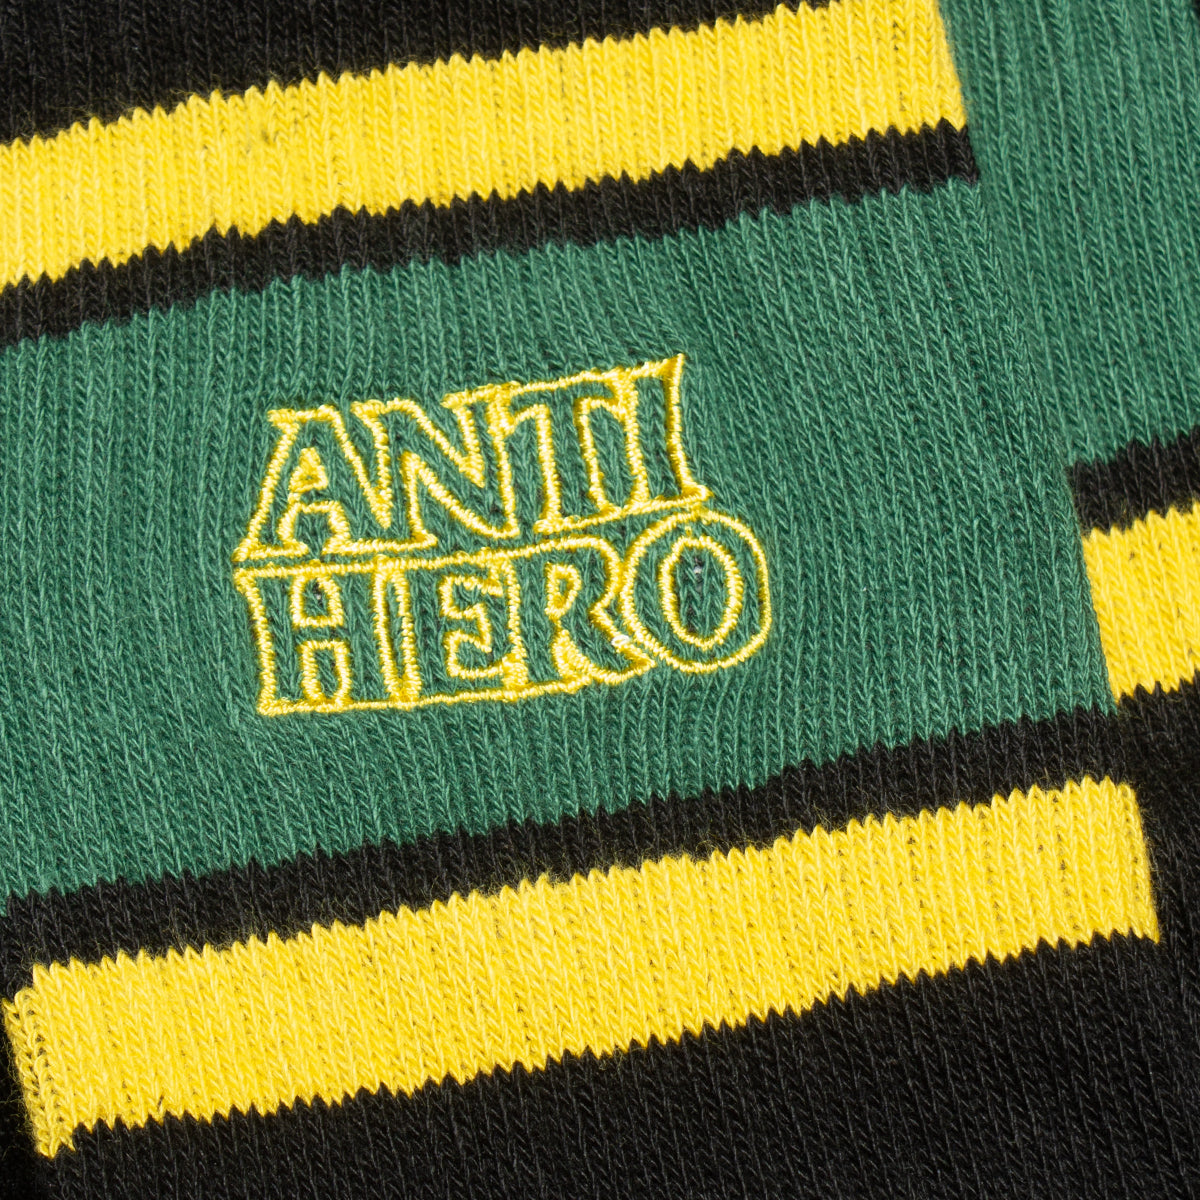 Anti Hero | Black Hero Outline Sock Color : Black / Dark Green / Gold